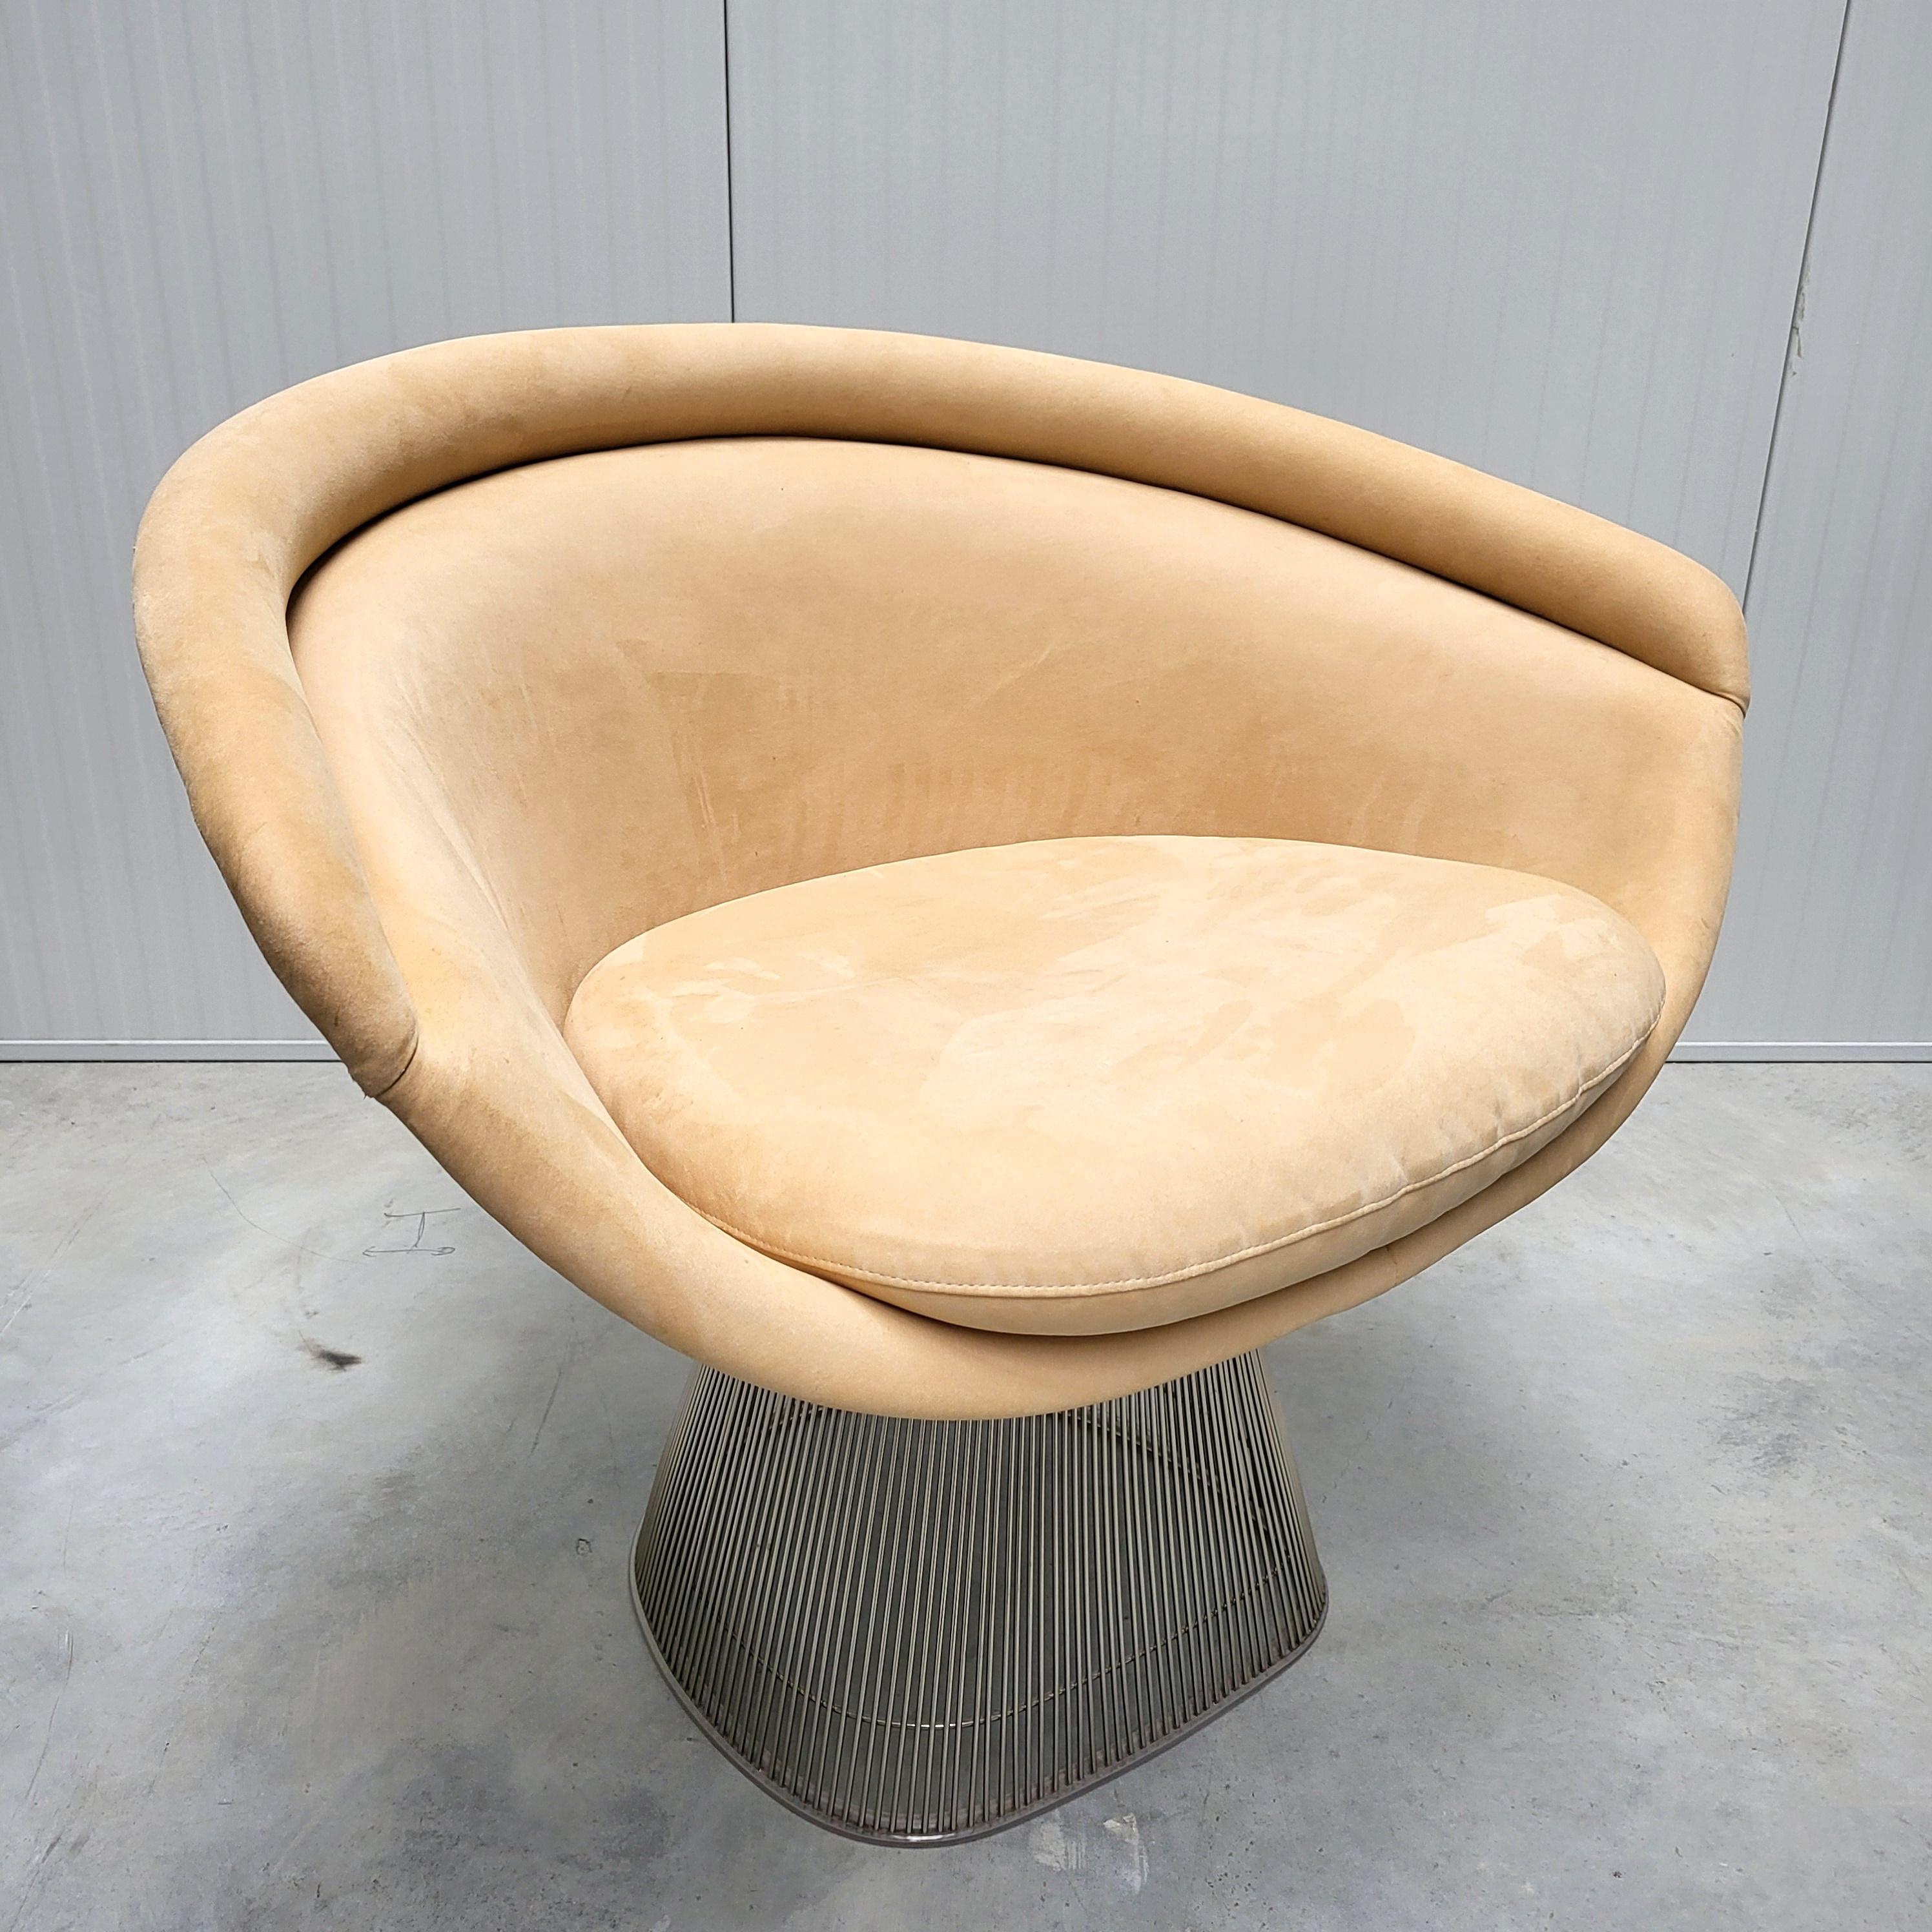 Impressionnante chaise longue Beige Ivory Ultra Suede par Warren Platner pour Knoll. 

Cette chaise longue révolutionnaire a été conçue dans les années 1960 par Warren Platner et produite par Knoll au début des années 2000. Ce classique du milieu du